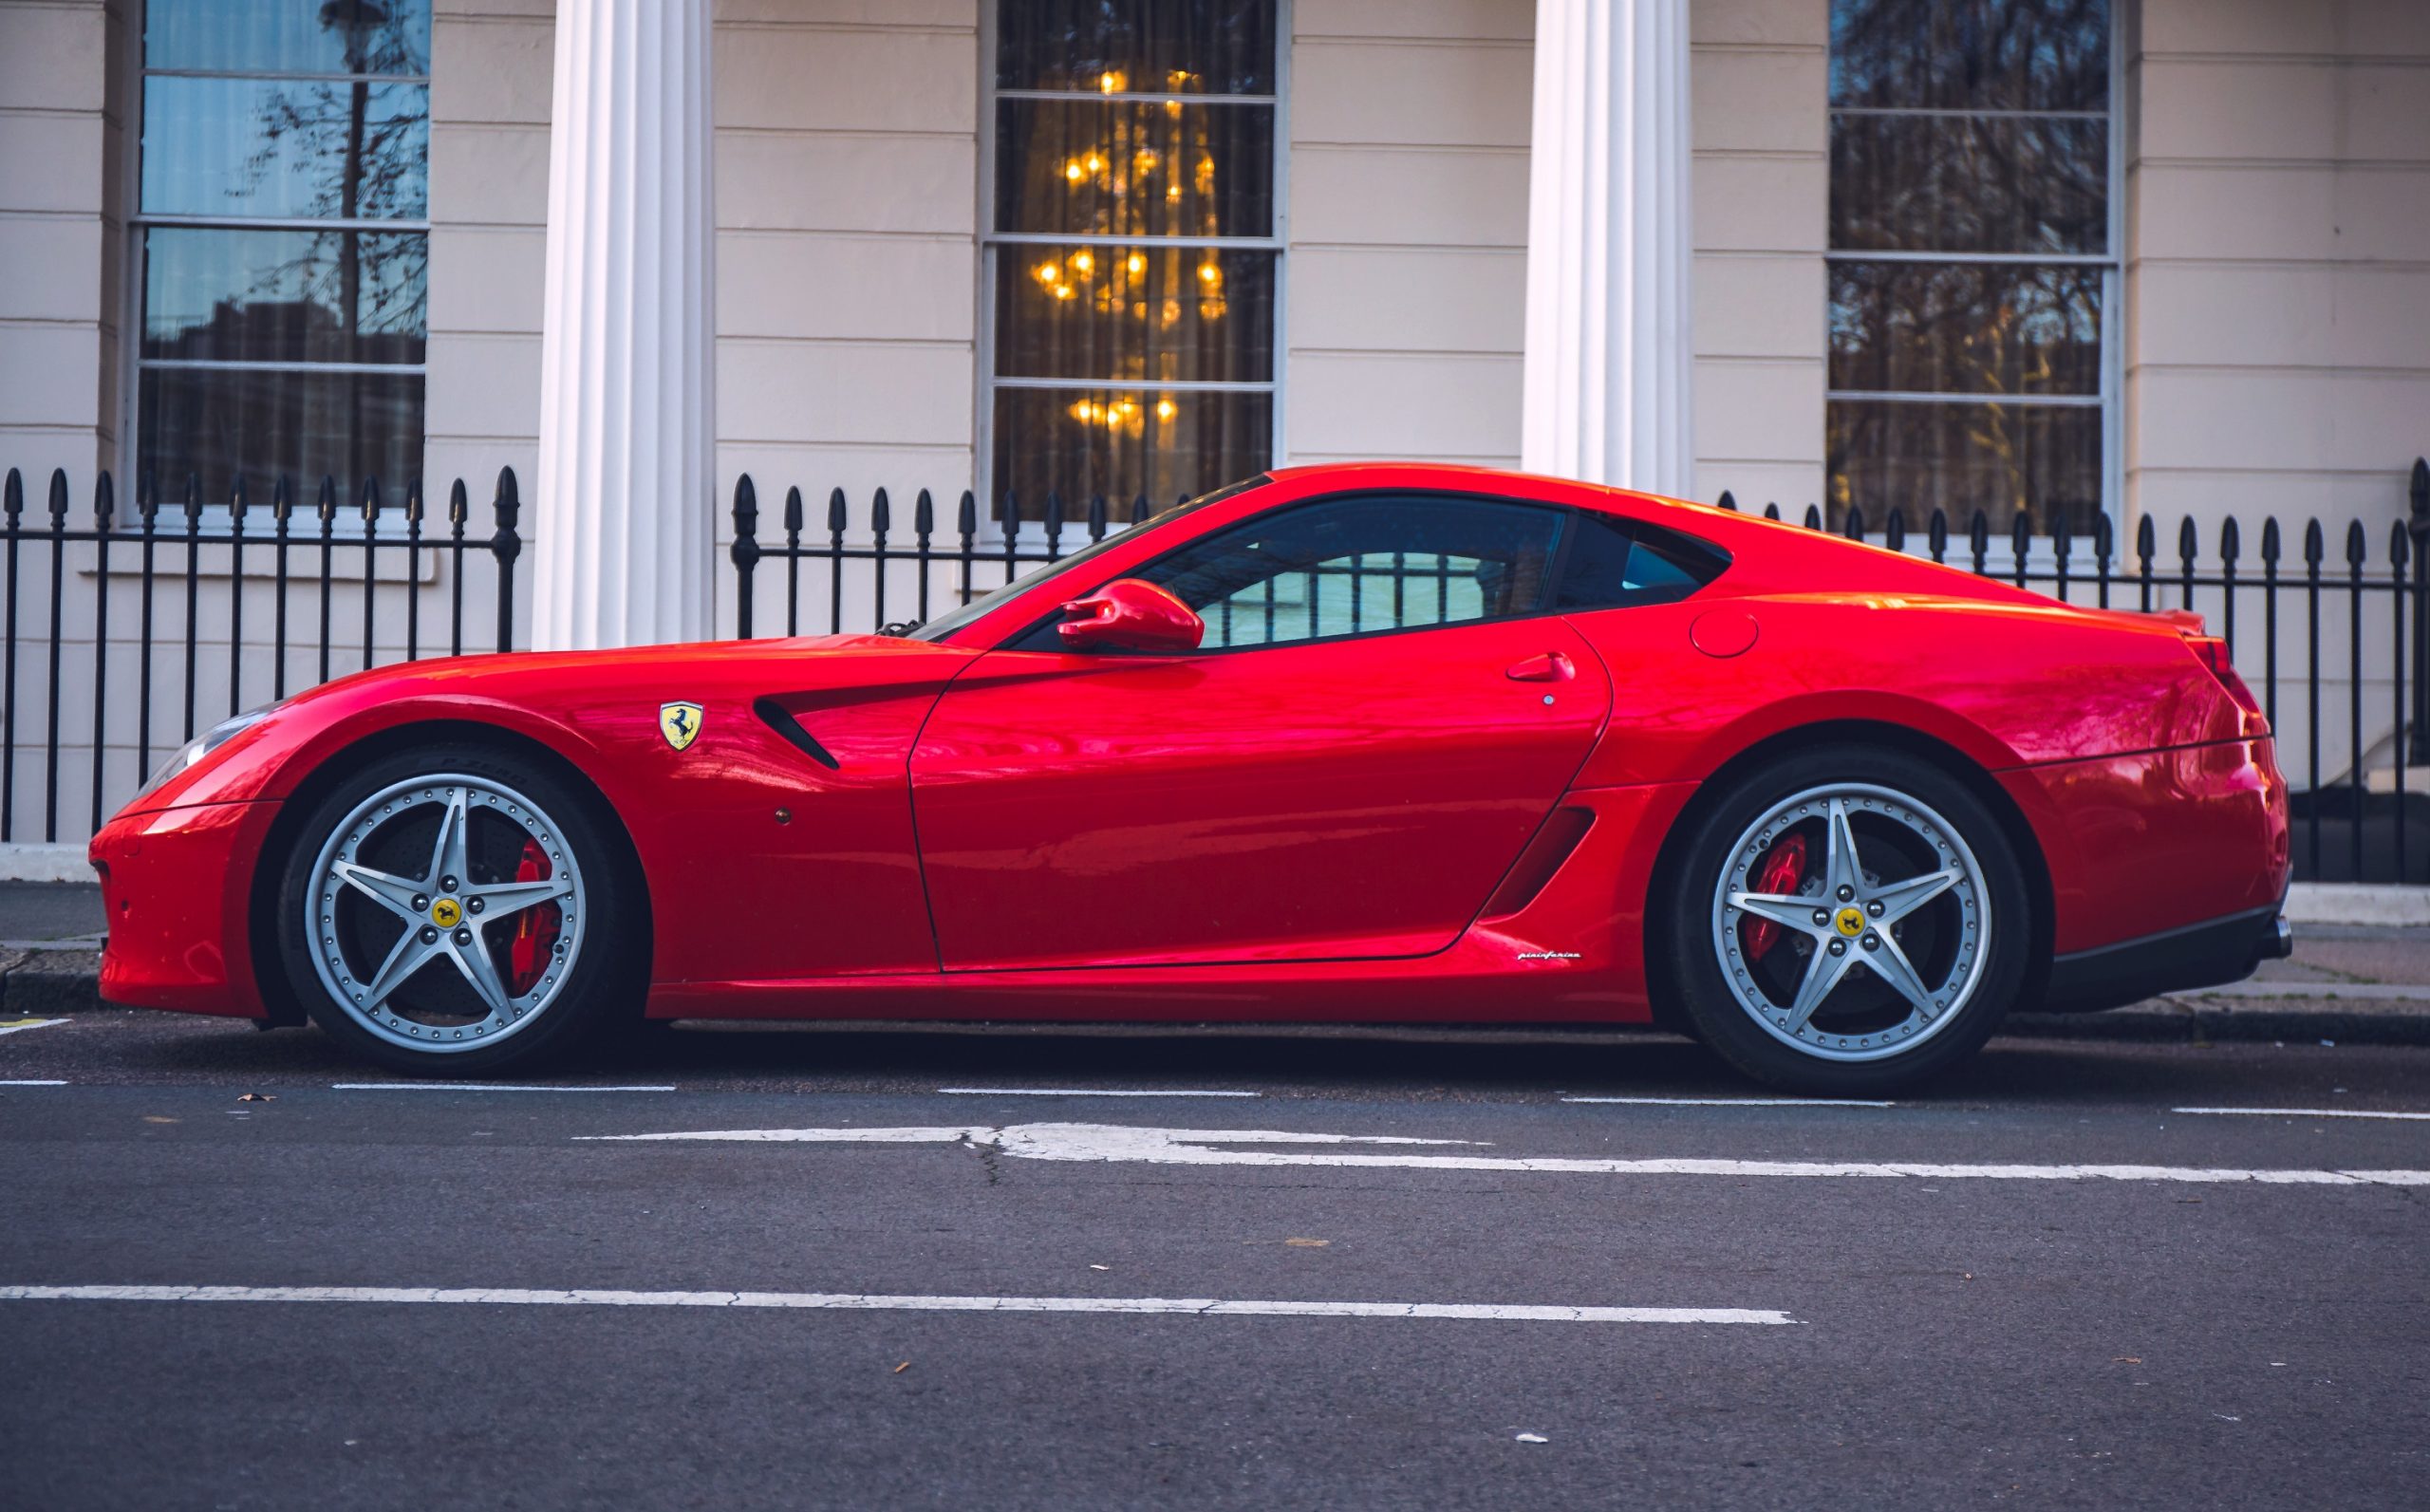 A red Ferrari 599 GTB shot in profile on a London side street